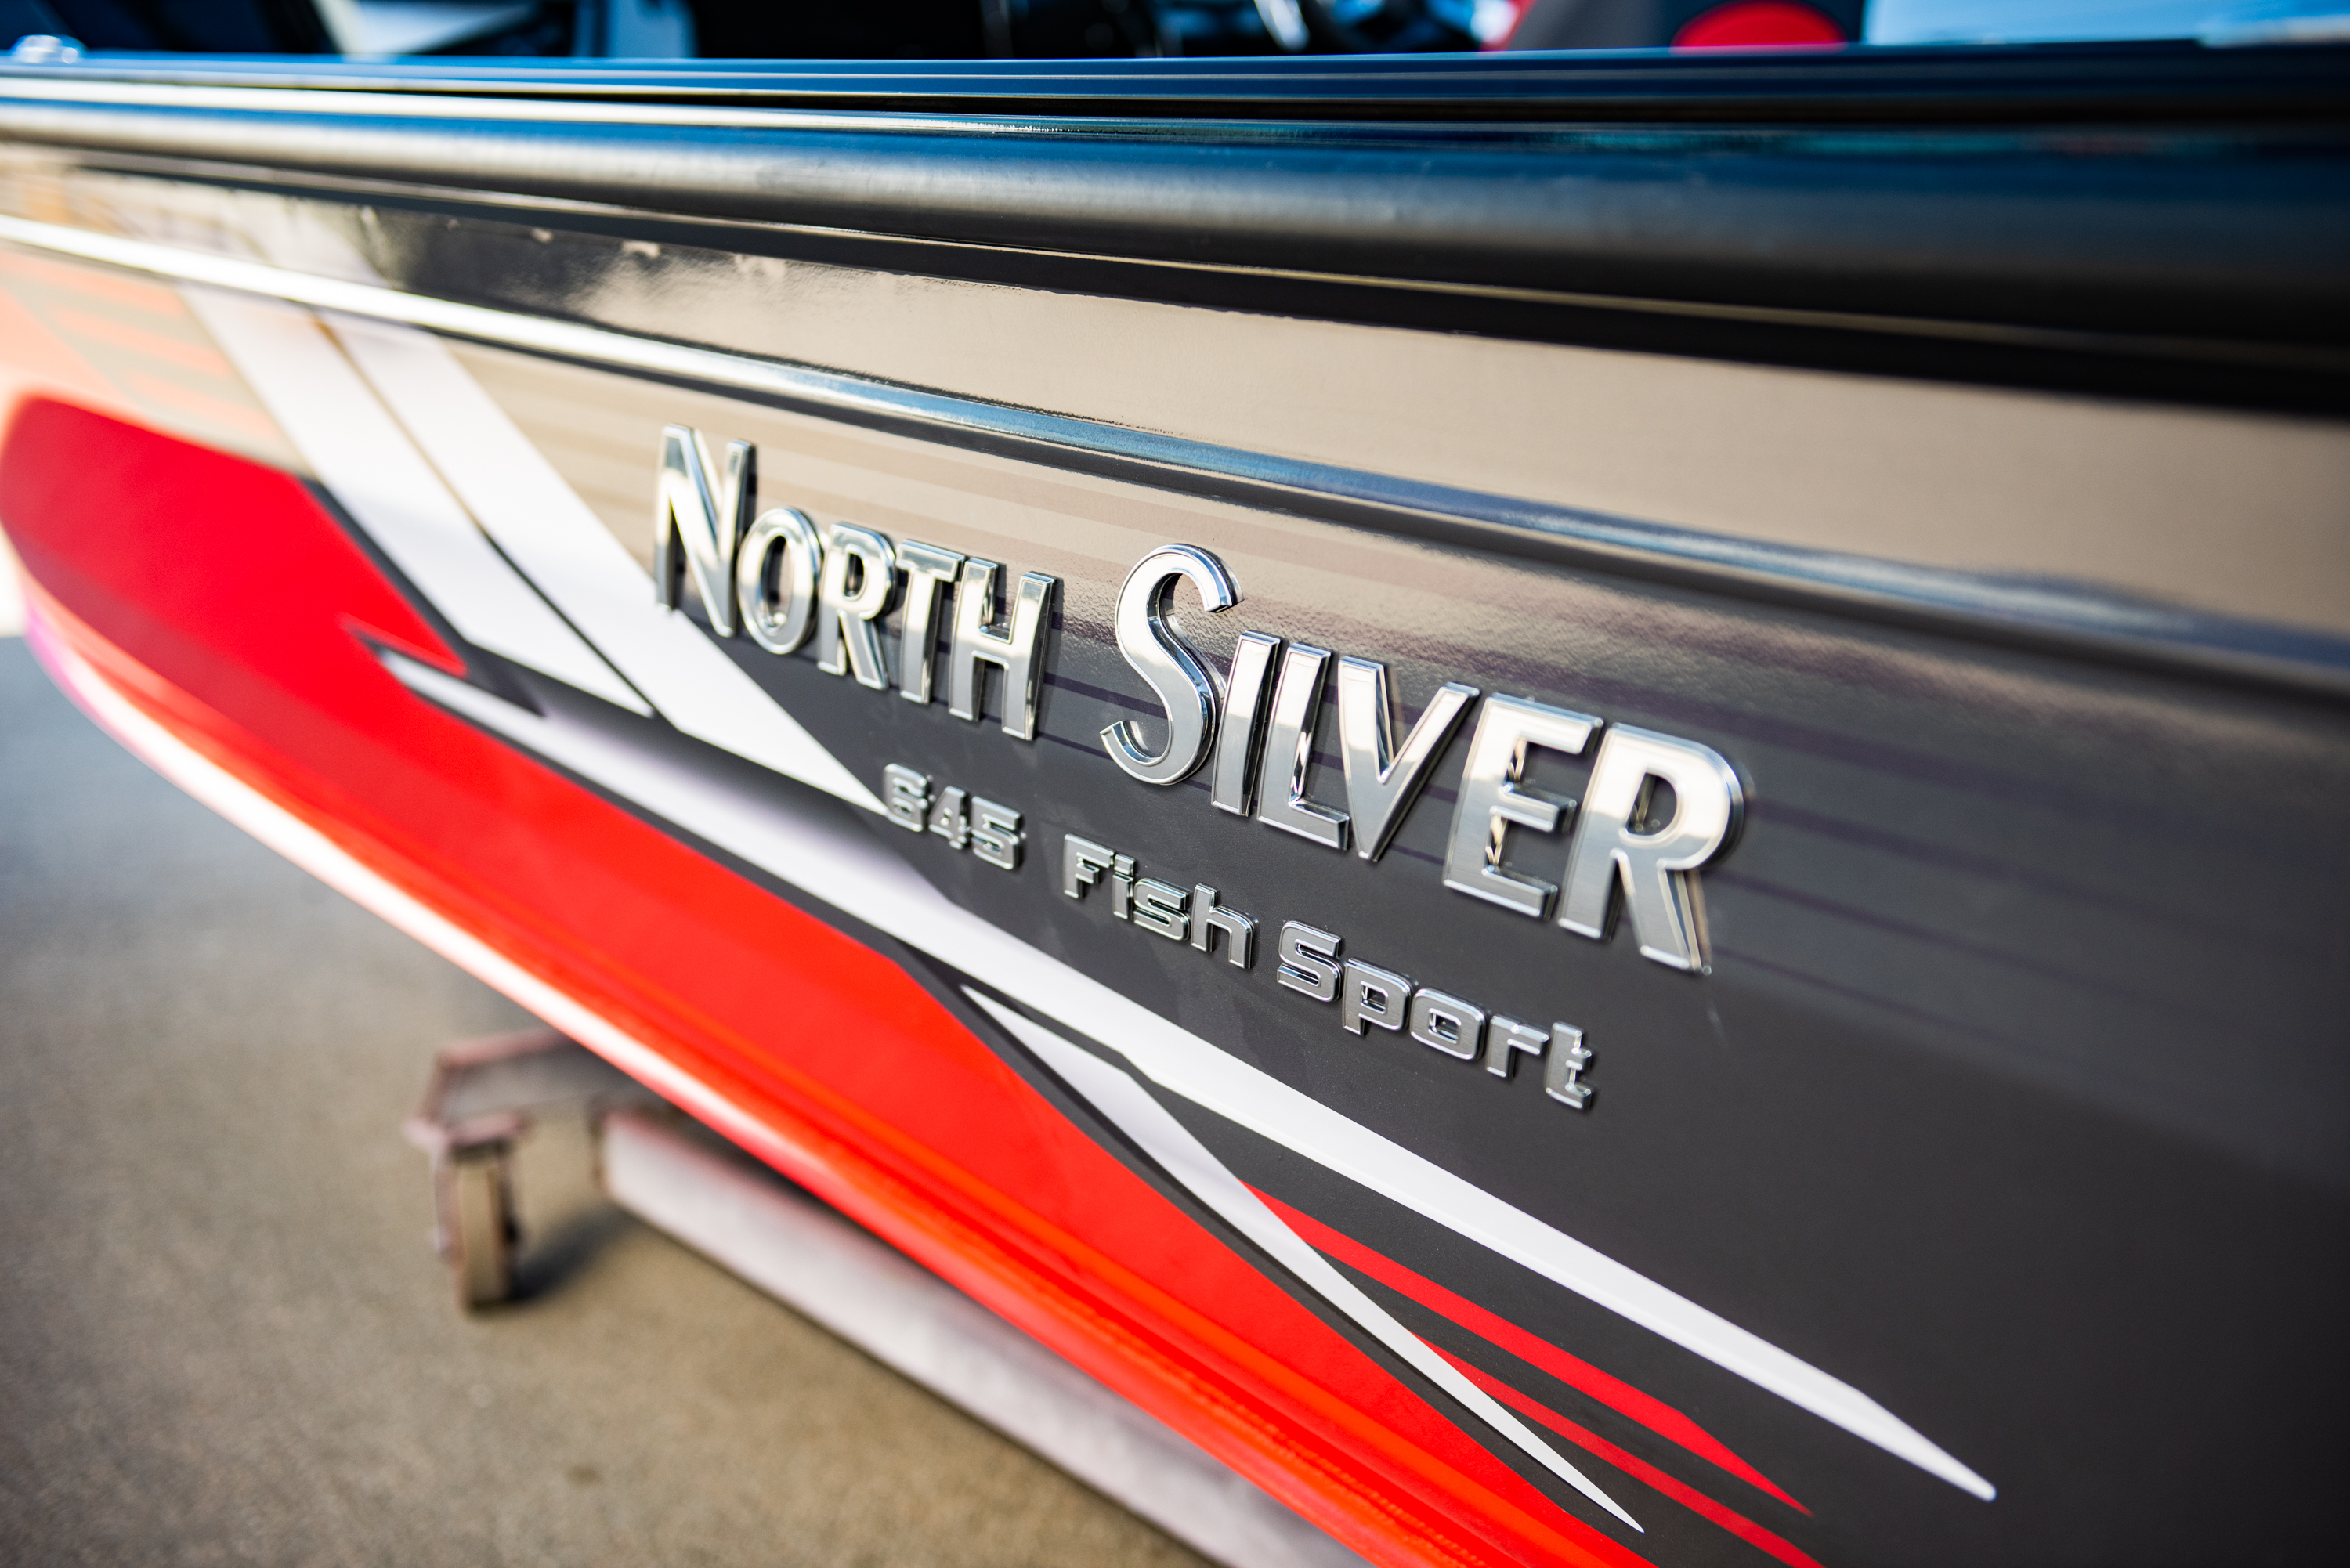 Nord fish. Норд Сильвер 645. North Silver 645 Fish Sport. Катер Сильвер 645. Норд Сильвер катер 645 Фиш спорт.